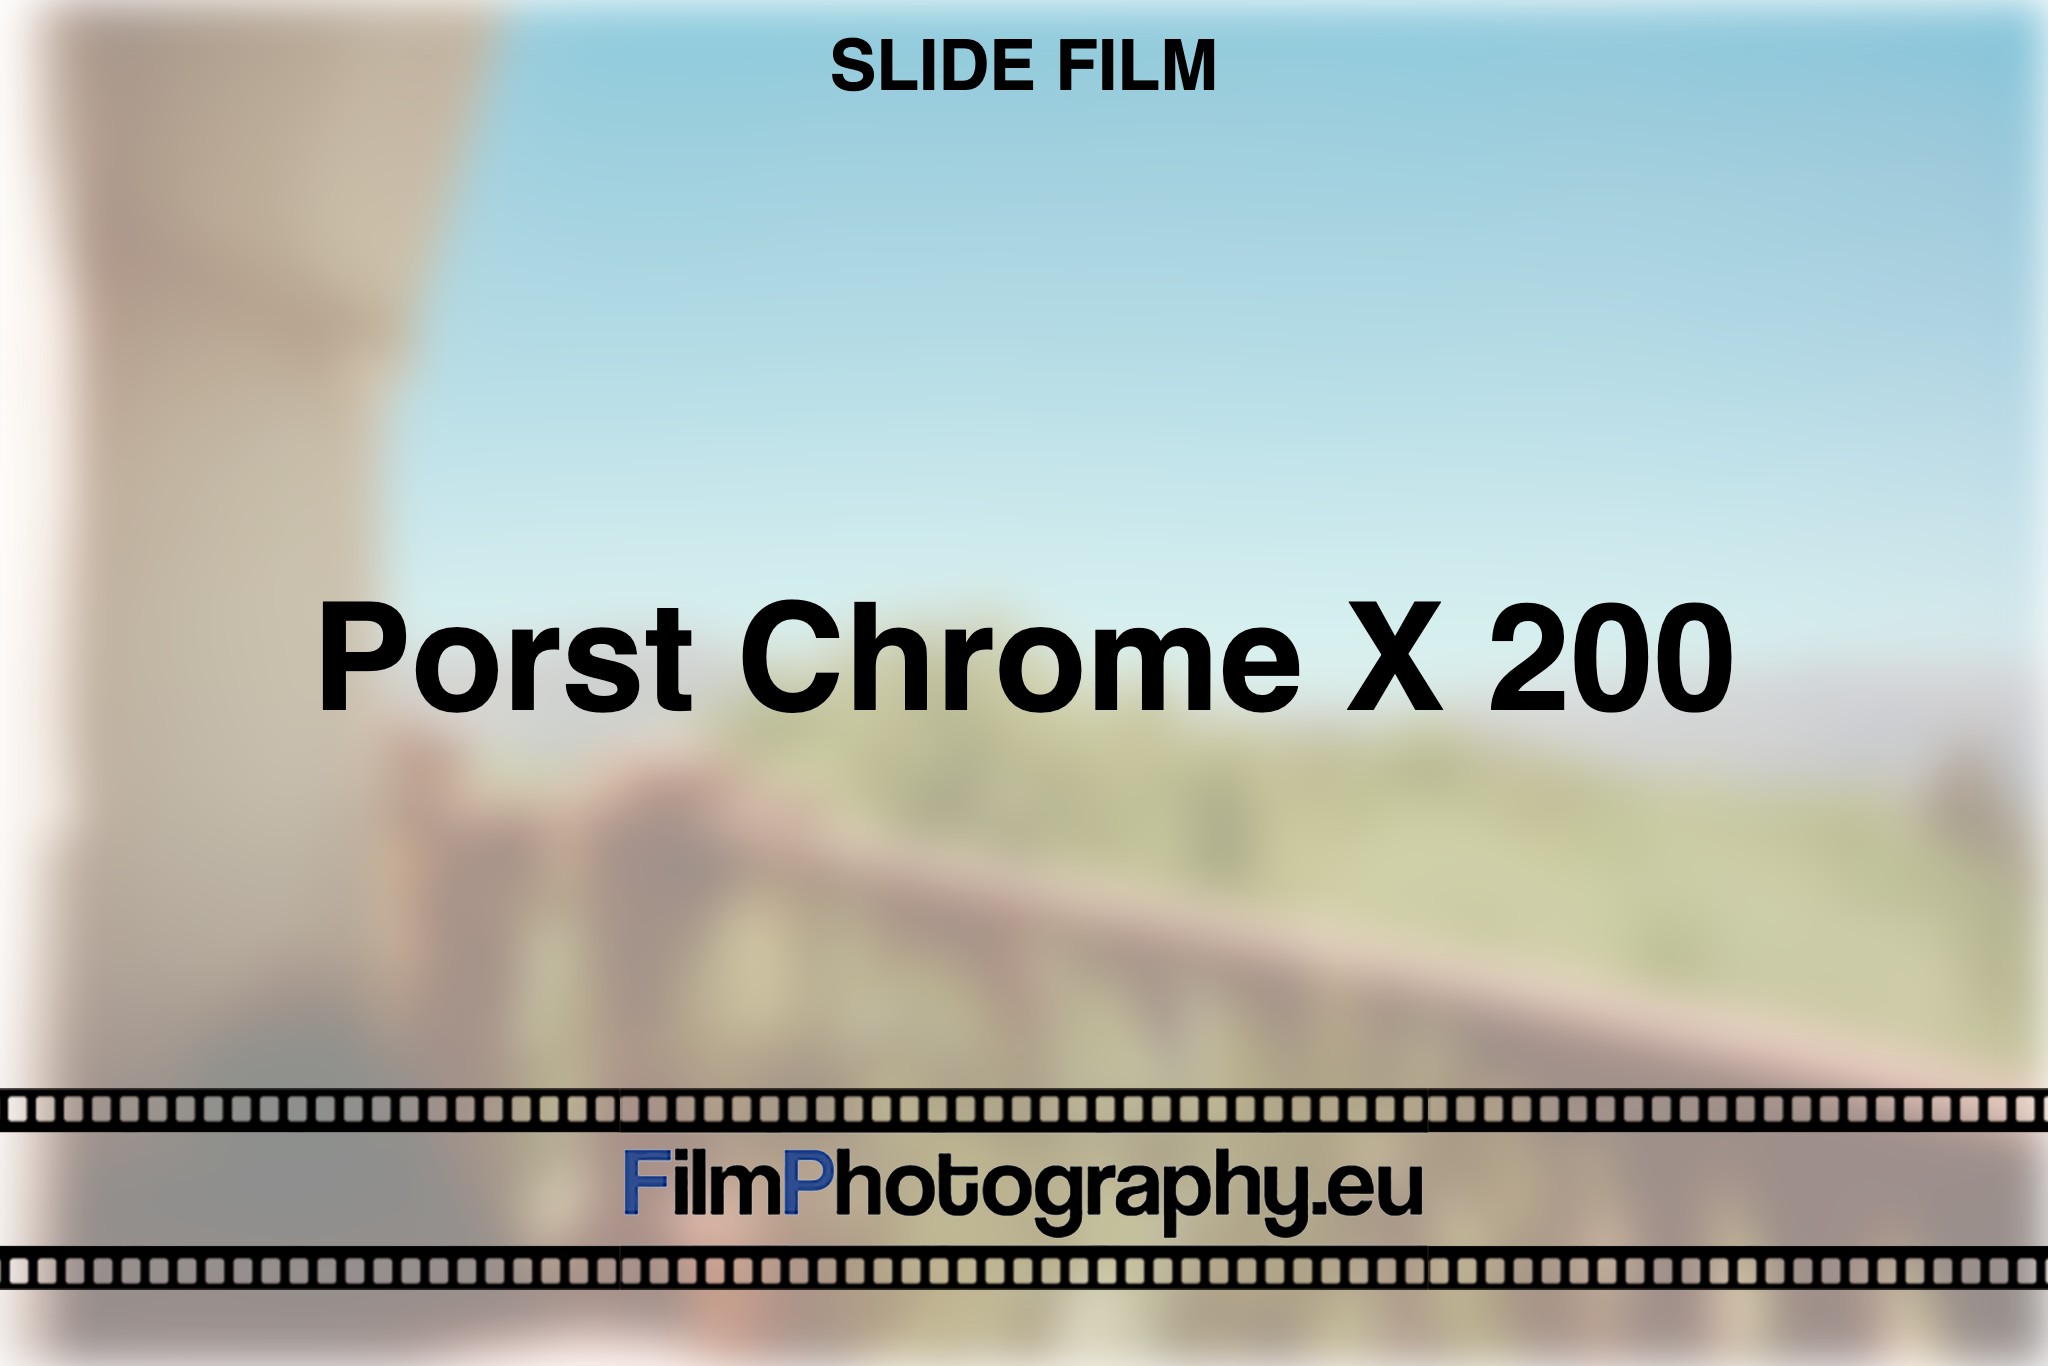 porst-chrome-x-200-slide-film-bnv